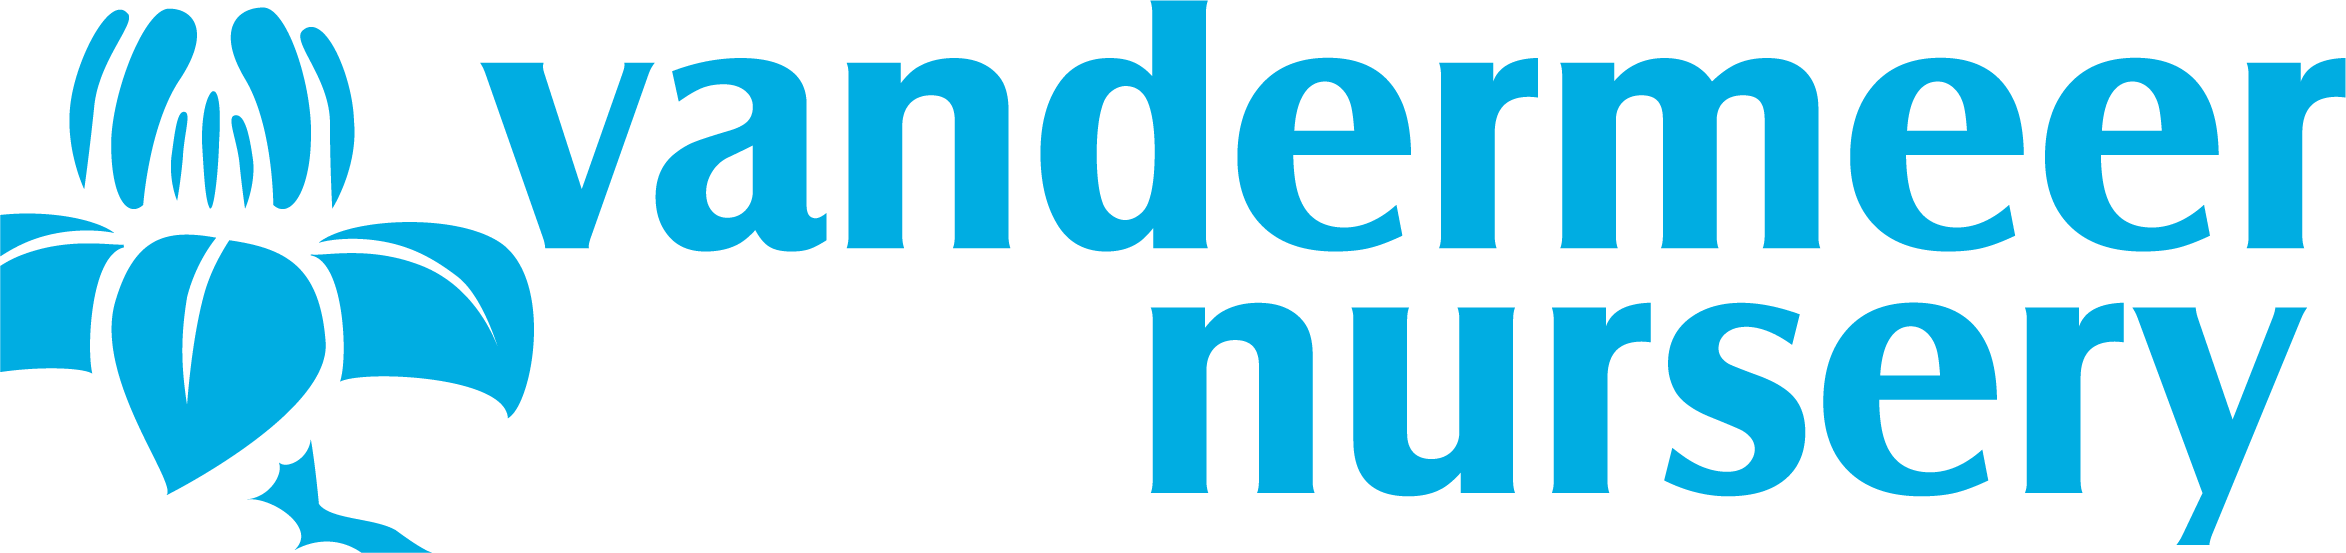 Vandermere Logo